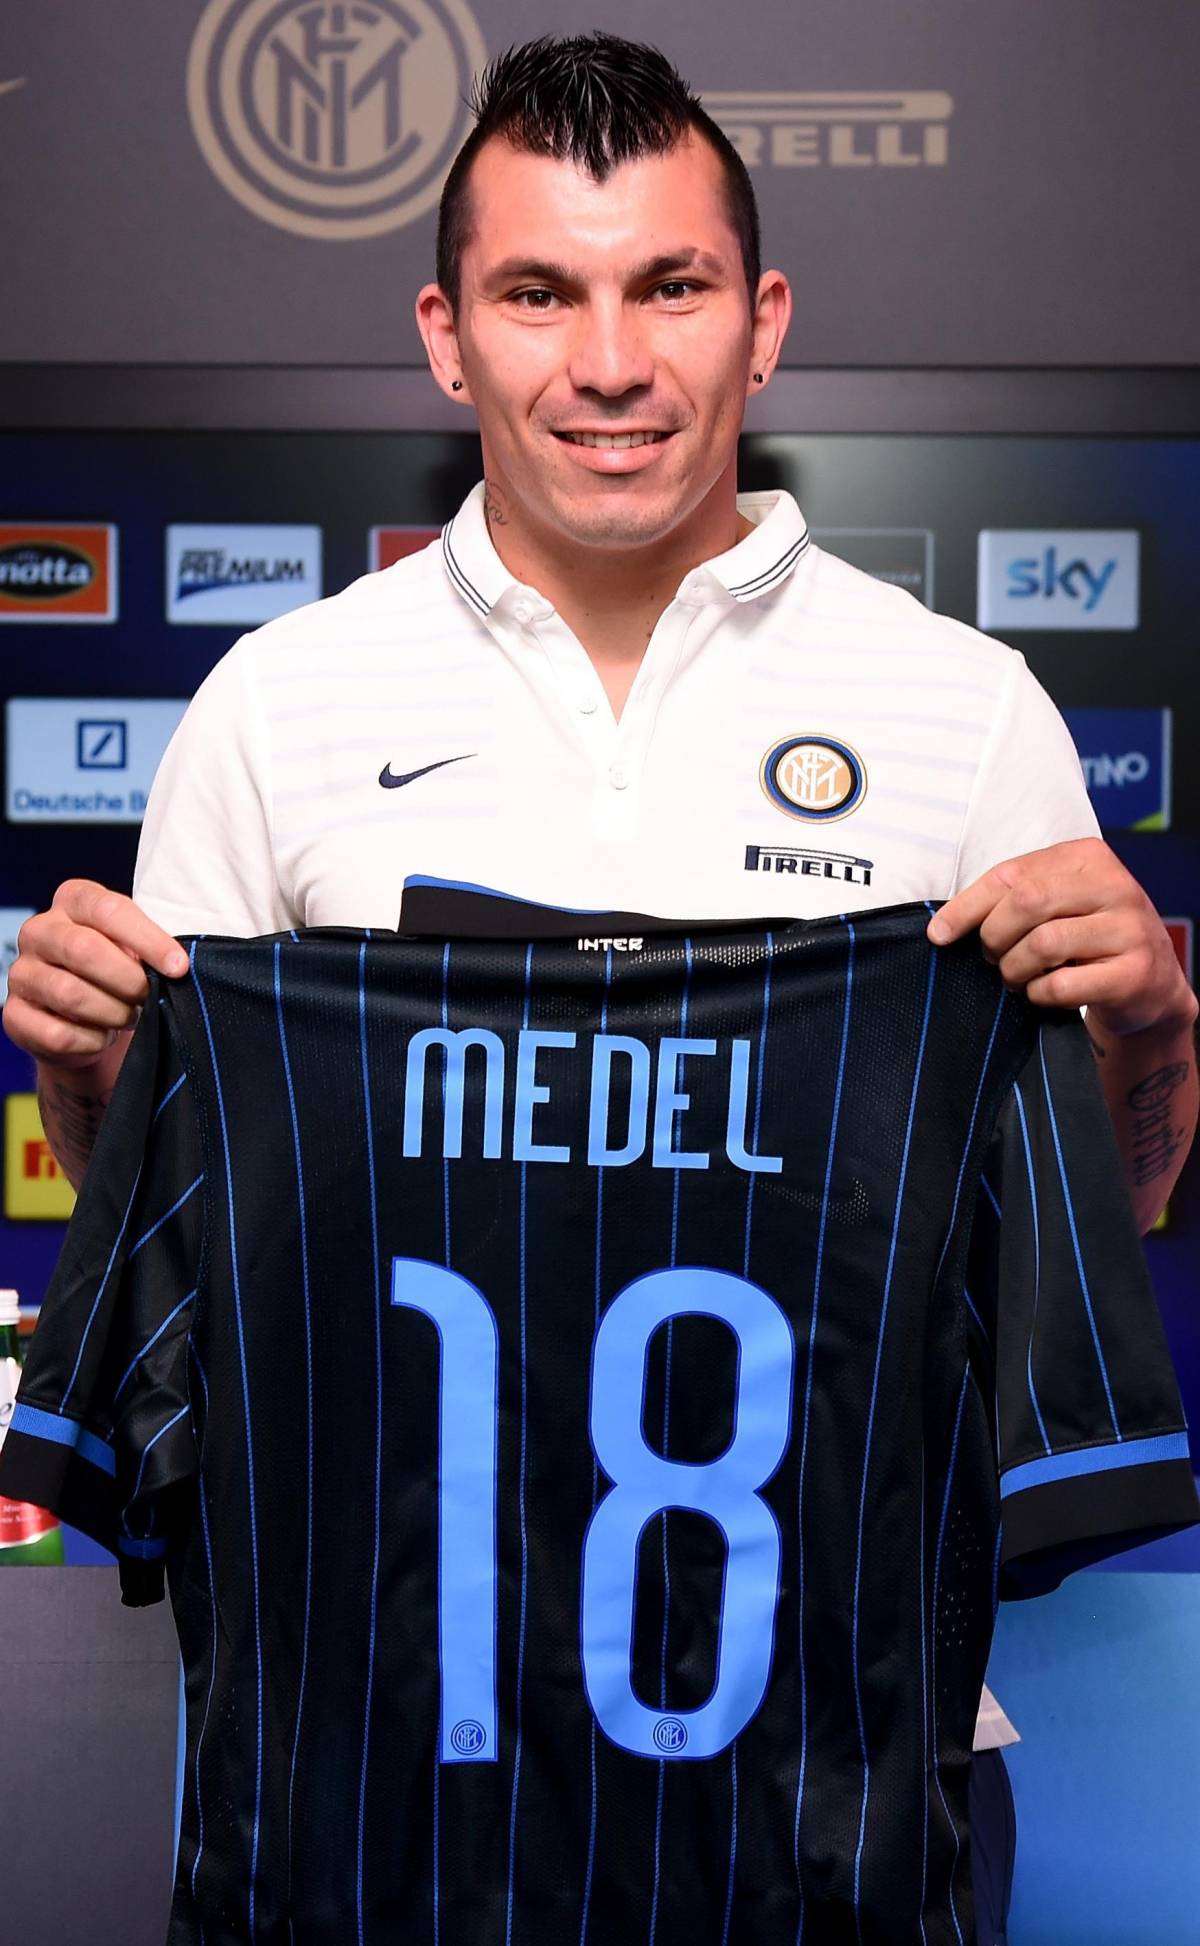 "Non sostituisco nessuno ma sarò il pitbull dell'Inter"